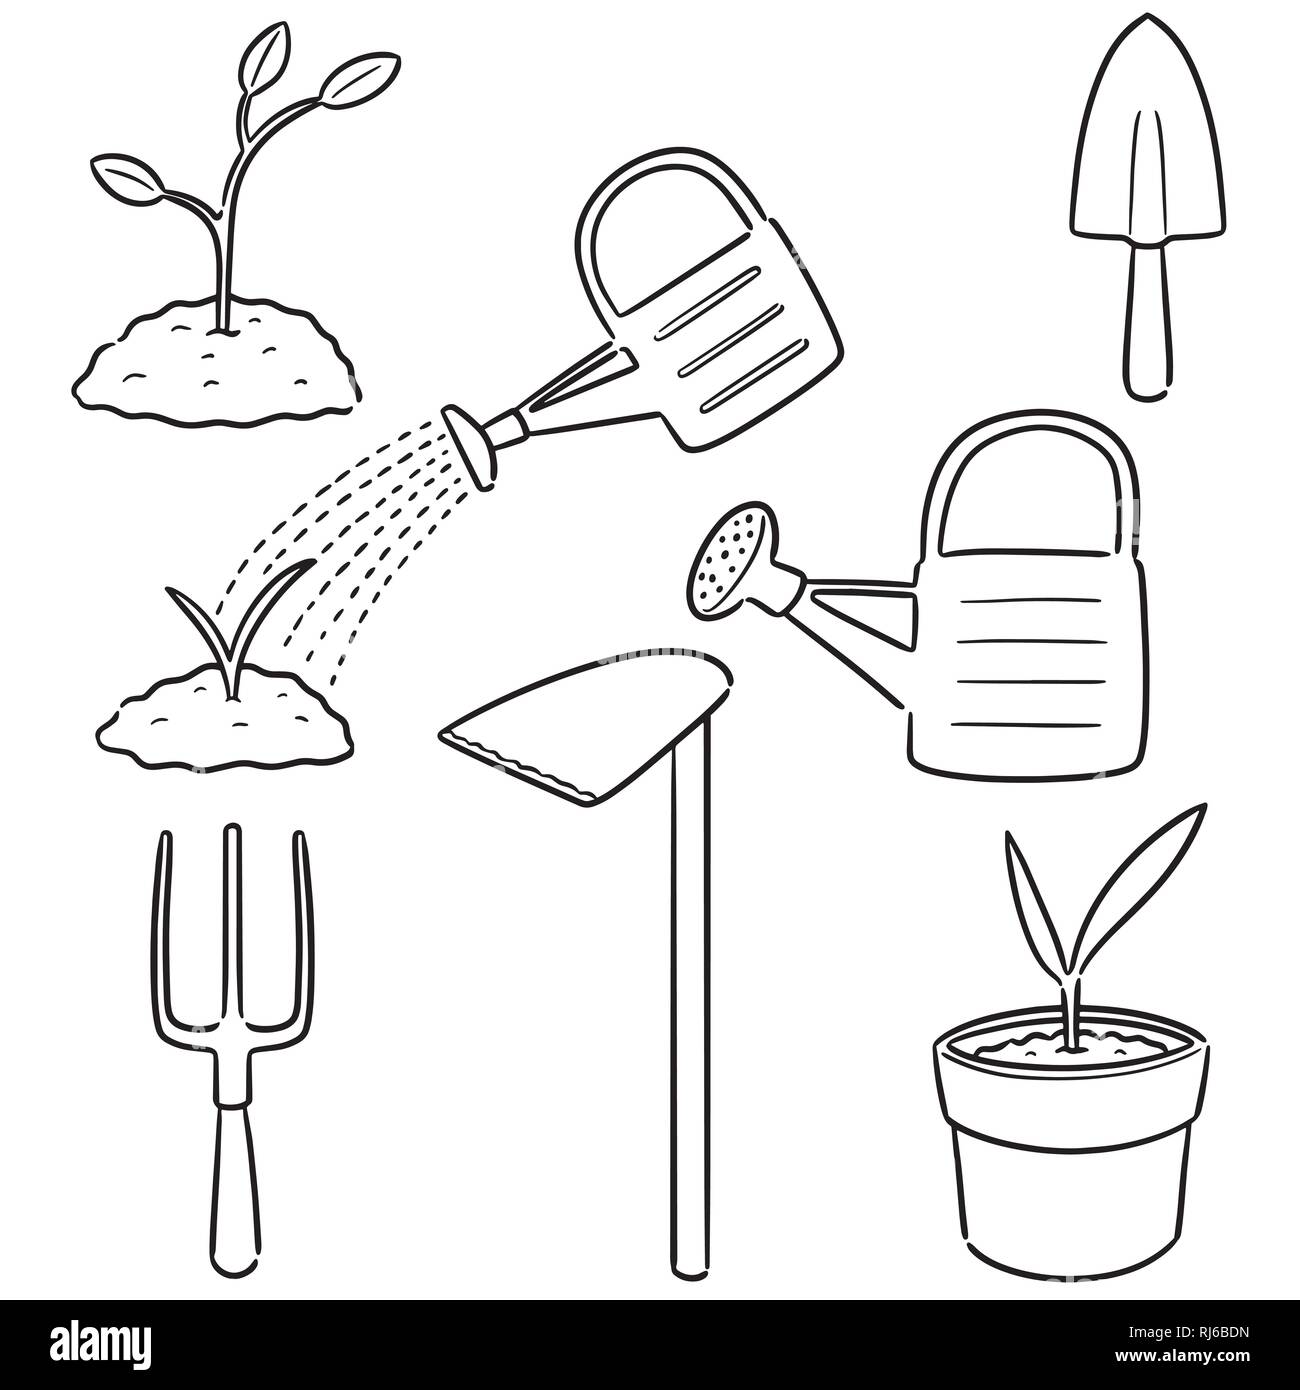 vector set of gardening tool Stock Vector